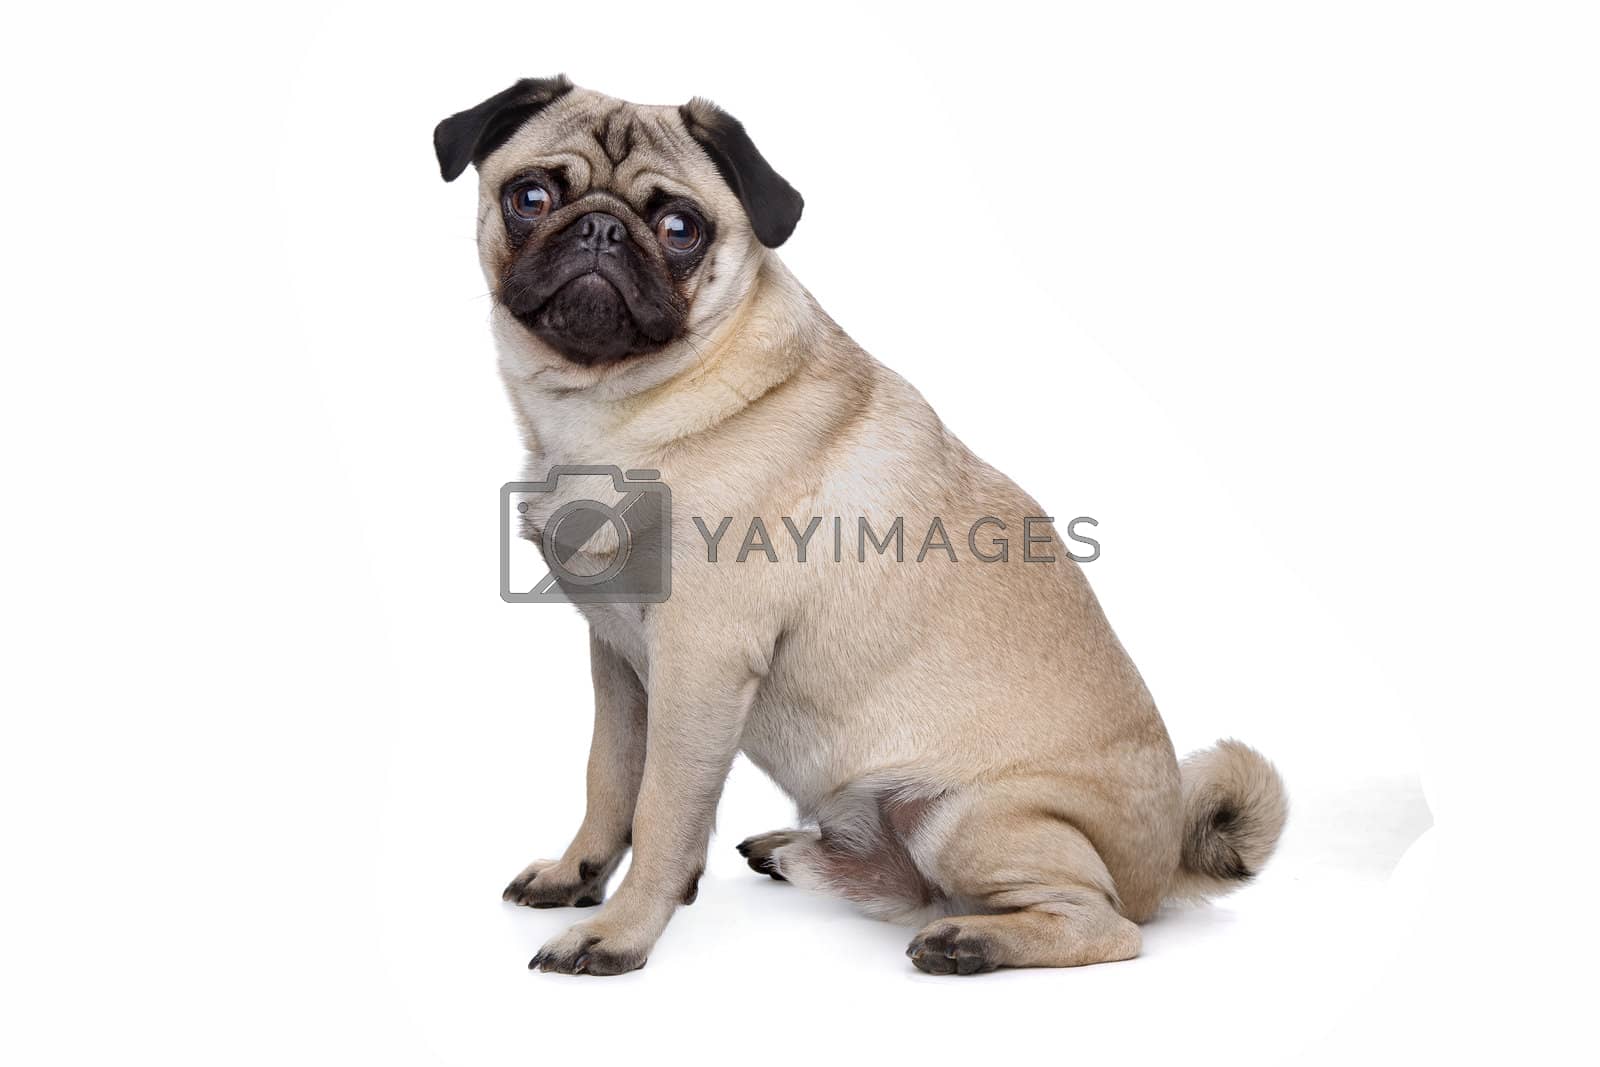 Royalty free image of Pug dog by eriklam